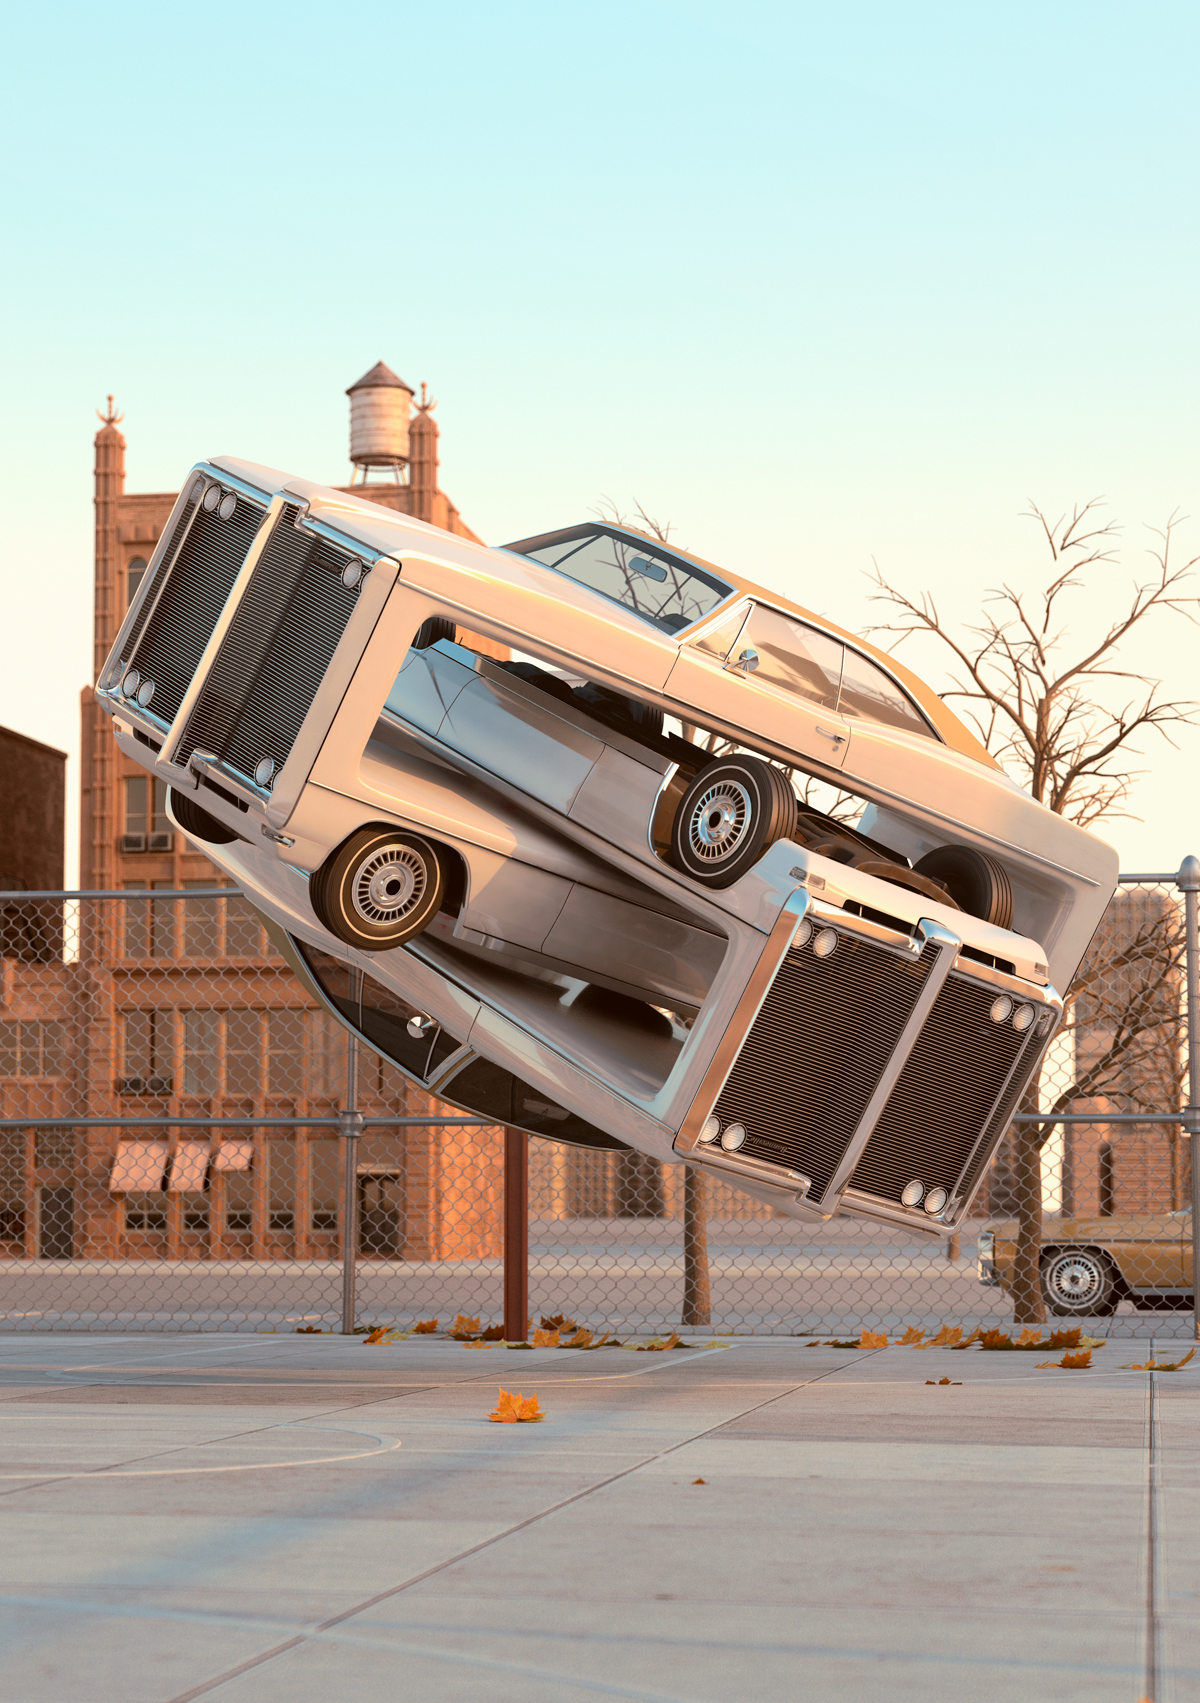 70's Retro Cars New York winter surreal automotive sculpture Aerobics 3D CGI